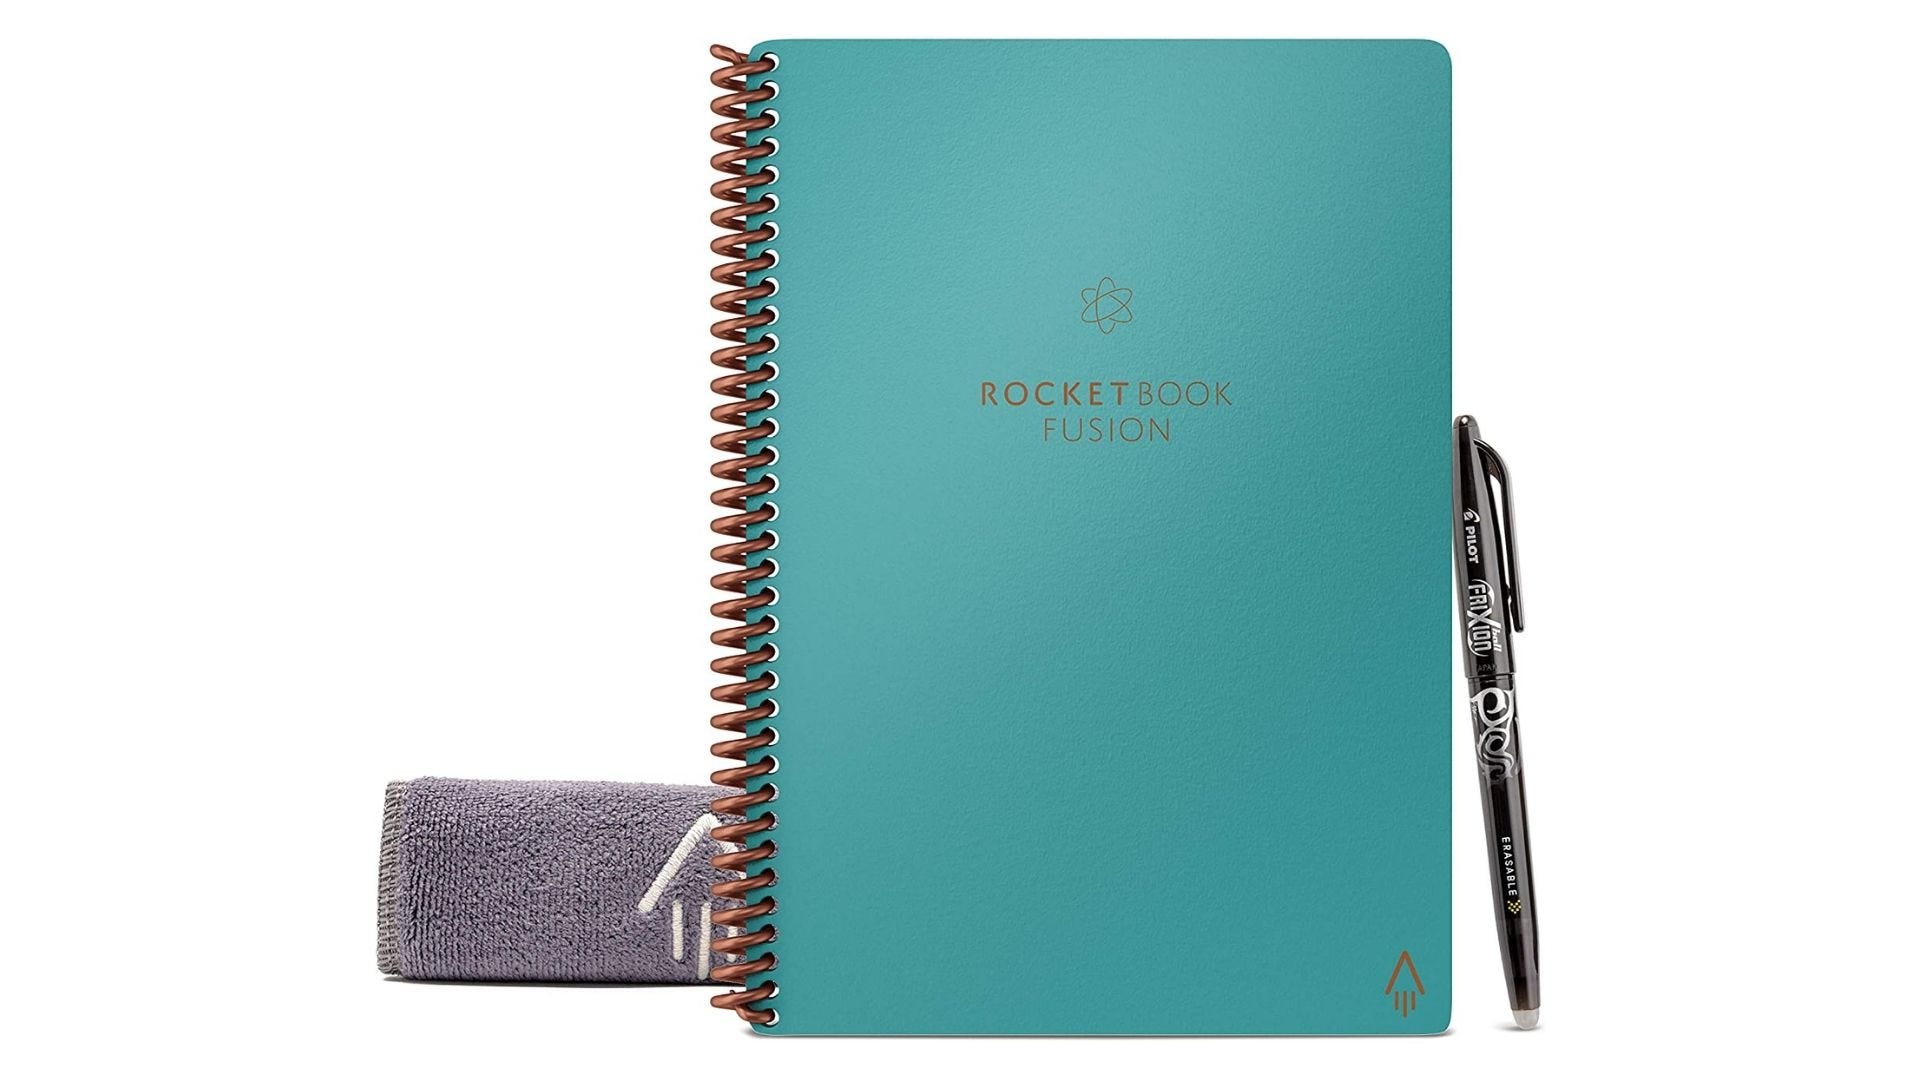 Carnet de notes réutilisable Rocketbook Fusion Smart en couleur sarcelle, avec stylo pilot frixion et chiffon réutilisable.